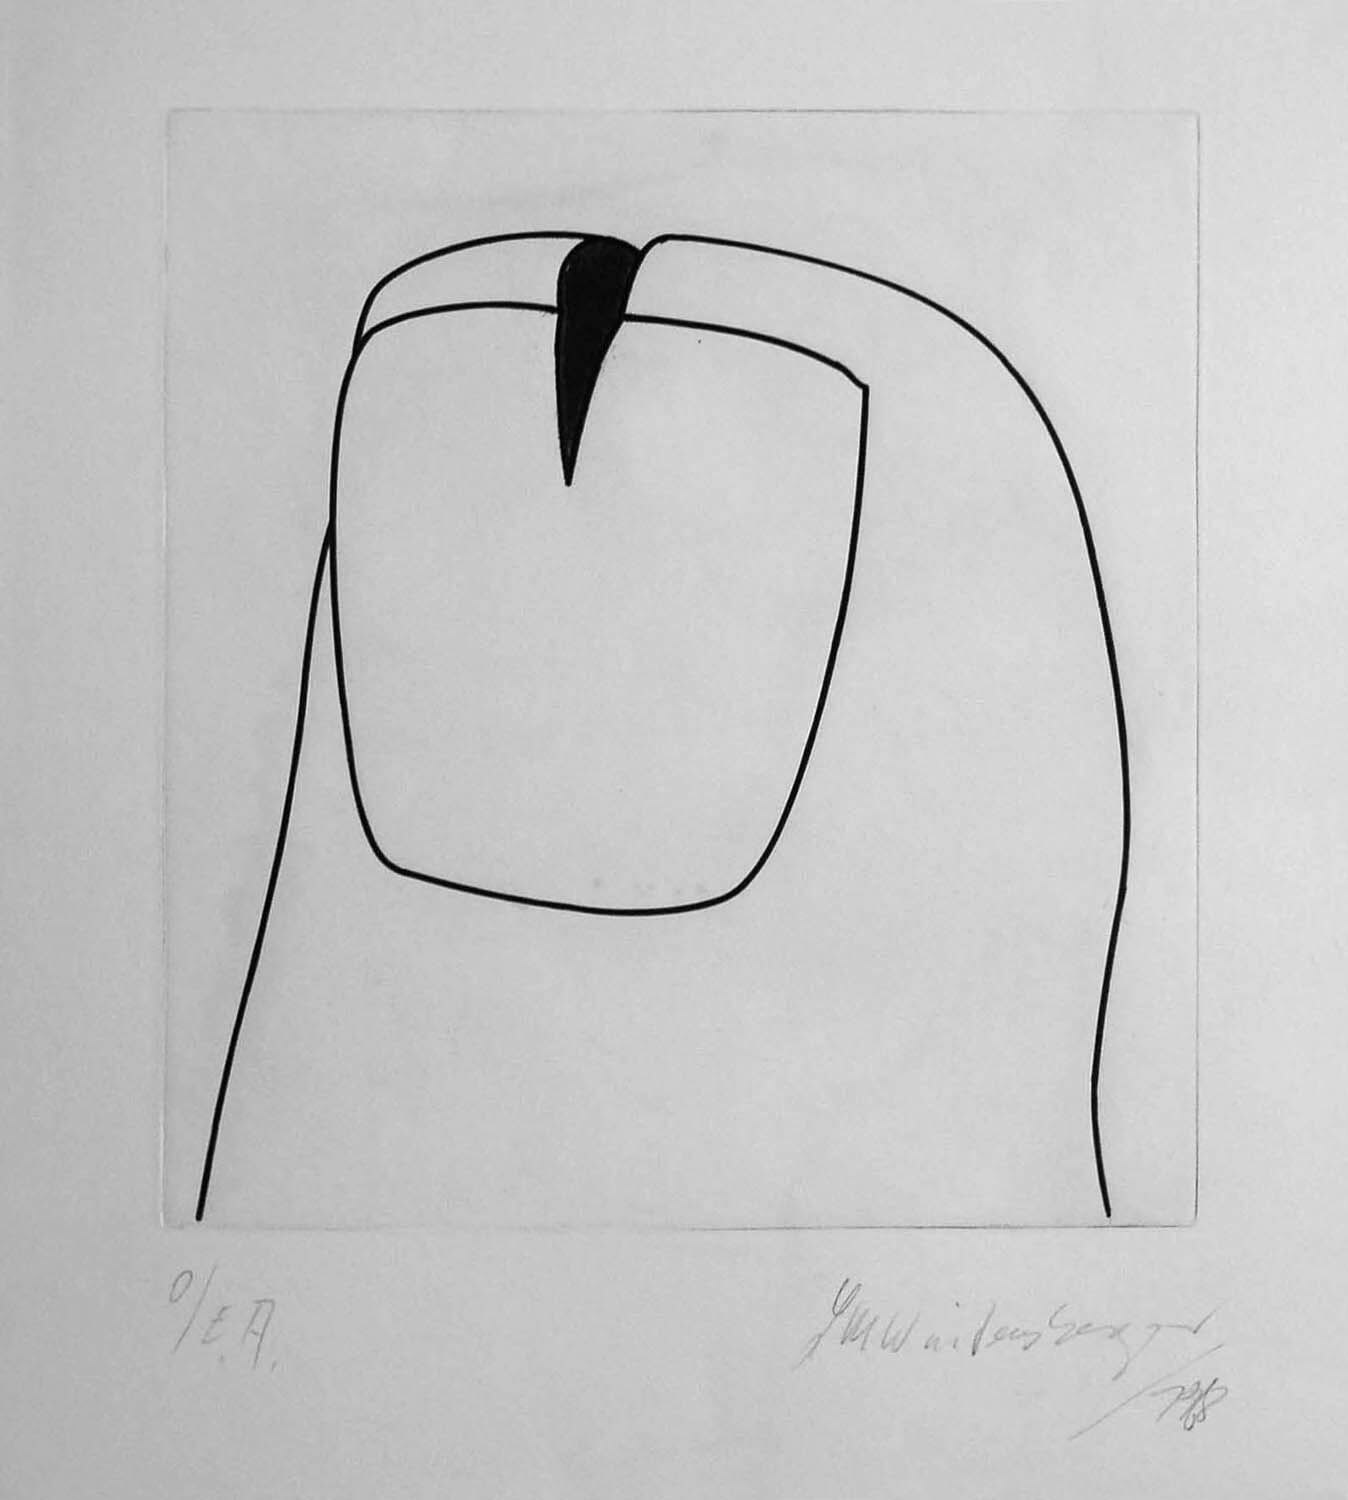 Lambert Maria Wintersberger, o. T. (eingeschnittener Daumen), 1970, Radierung, e. a., 78,5 x 61 cm